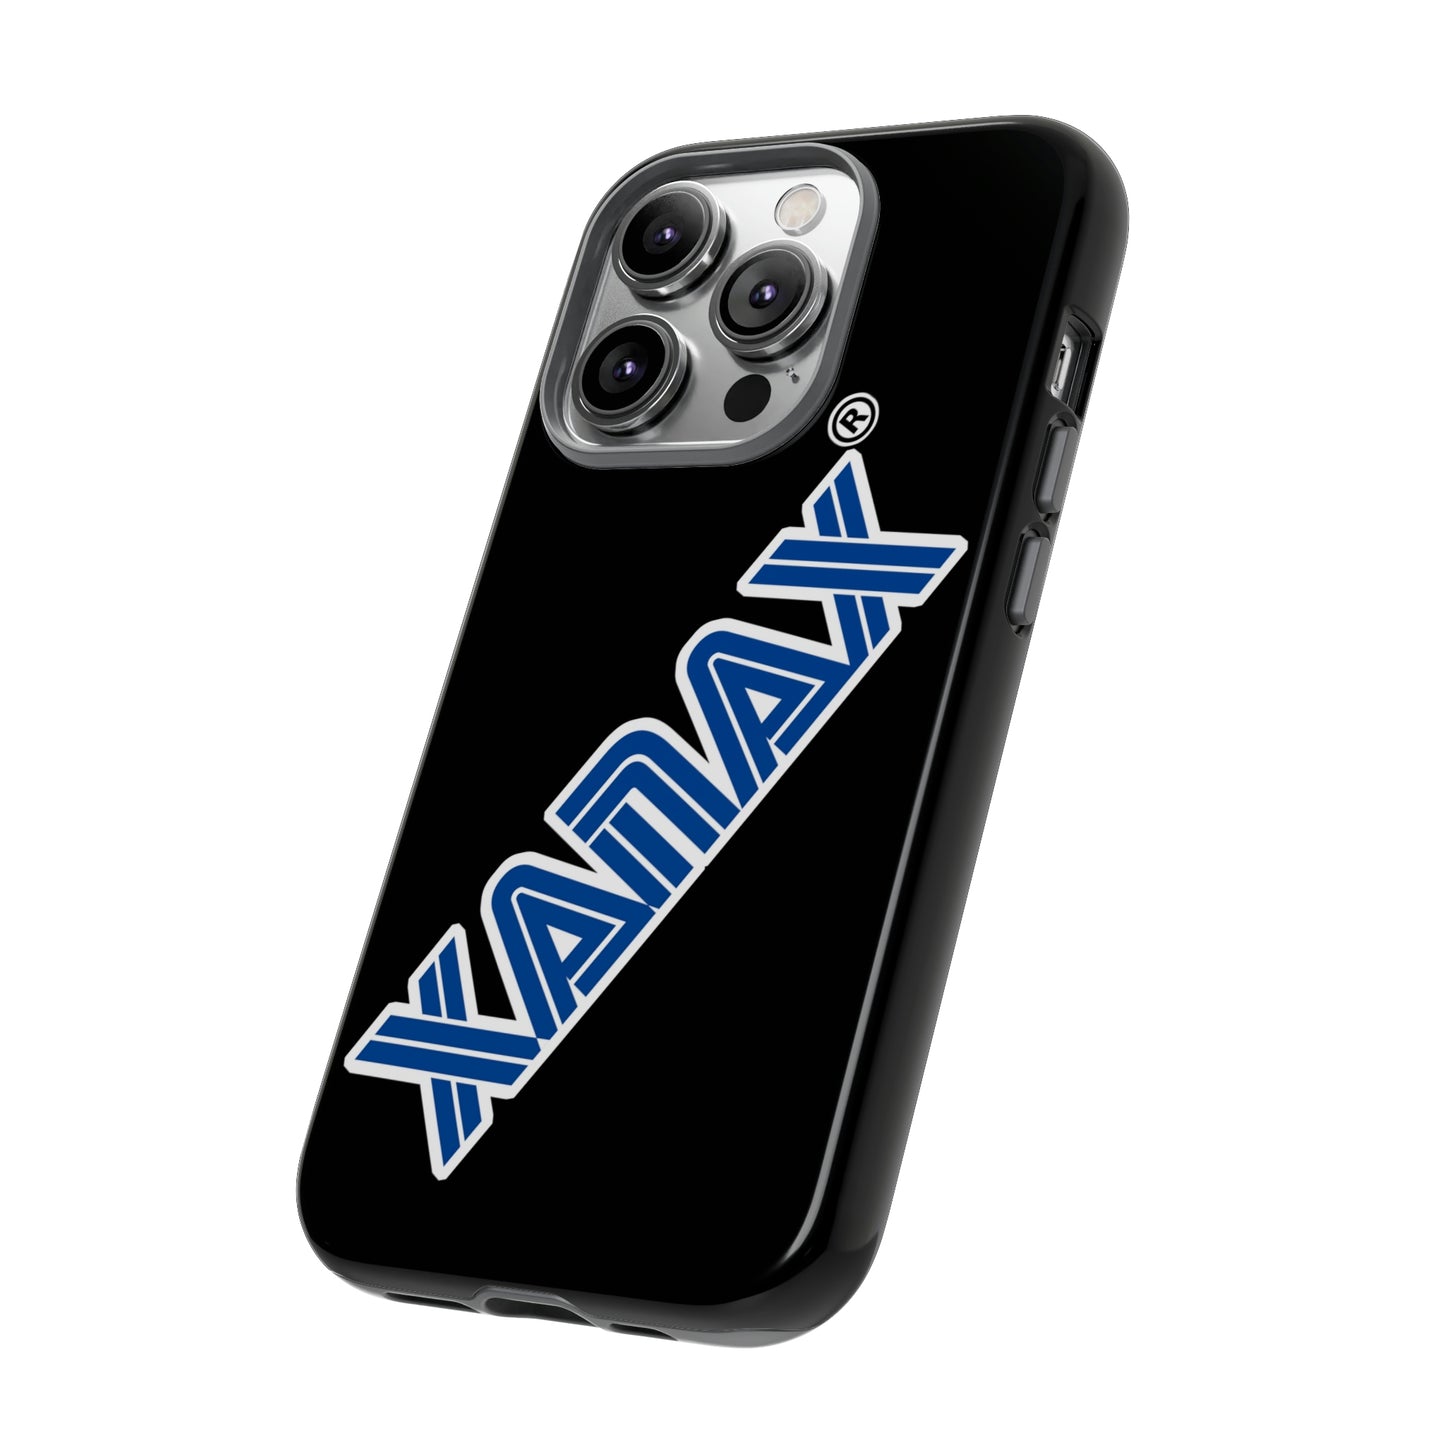 Tough Case - XANAX